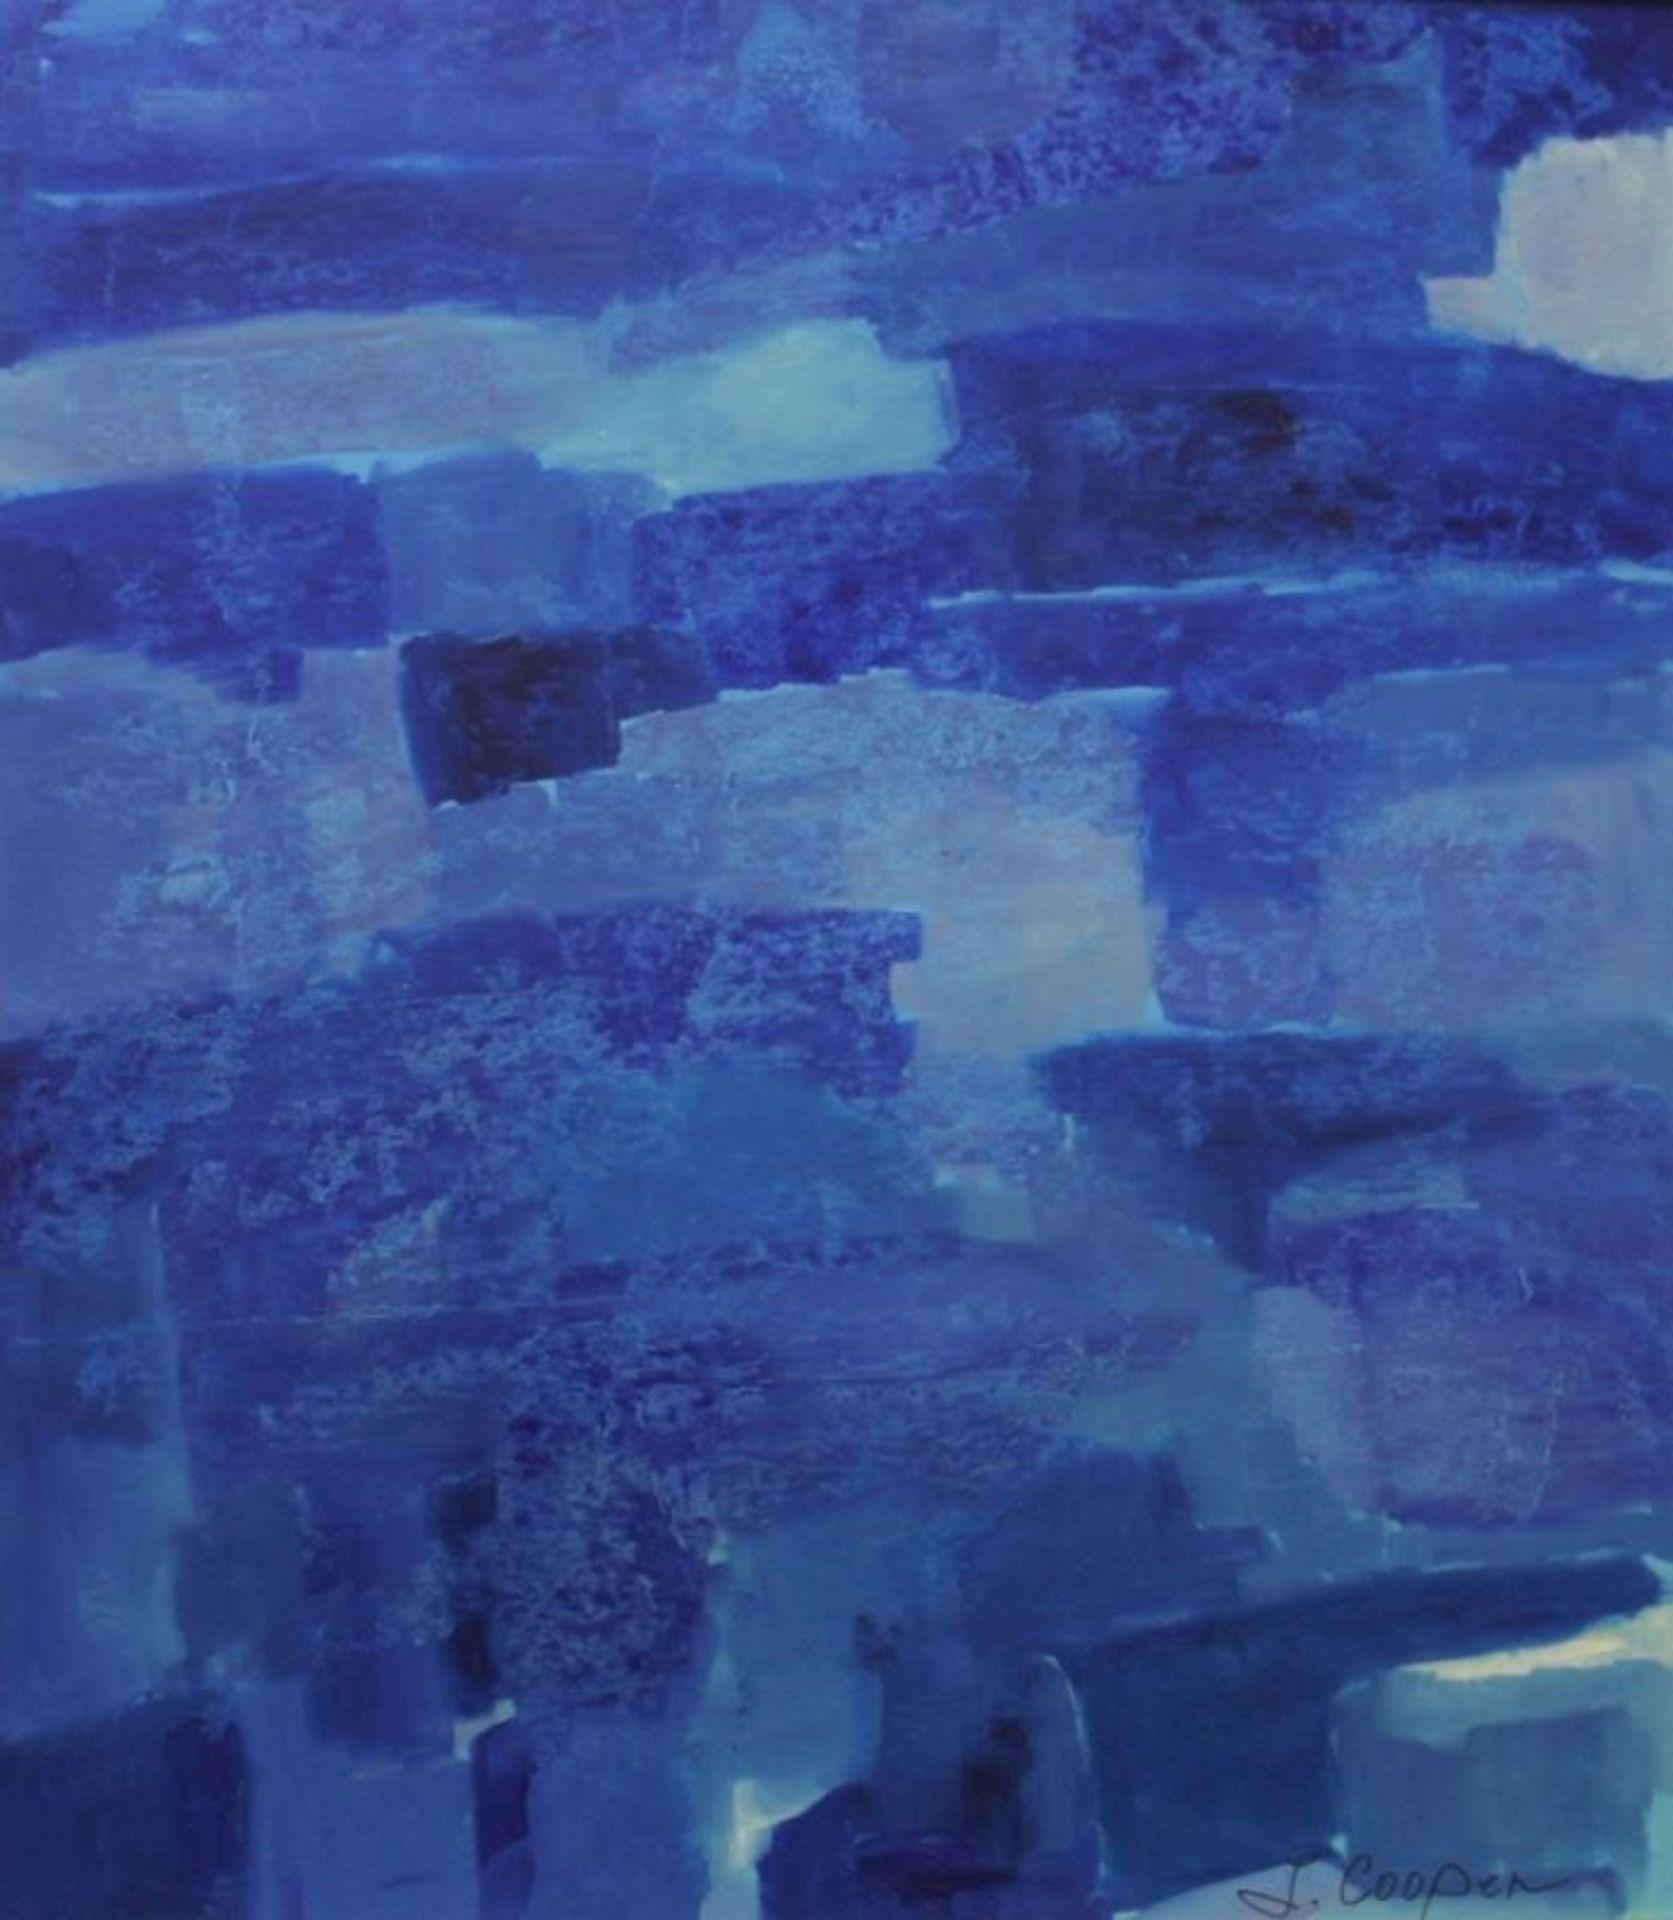 Cooper, J., zeitgenössischer Maler. "Farbkomposition in blau", sign., Öl/Malpappe, 80 x 70cm